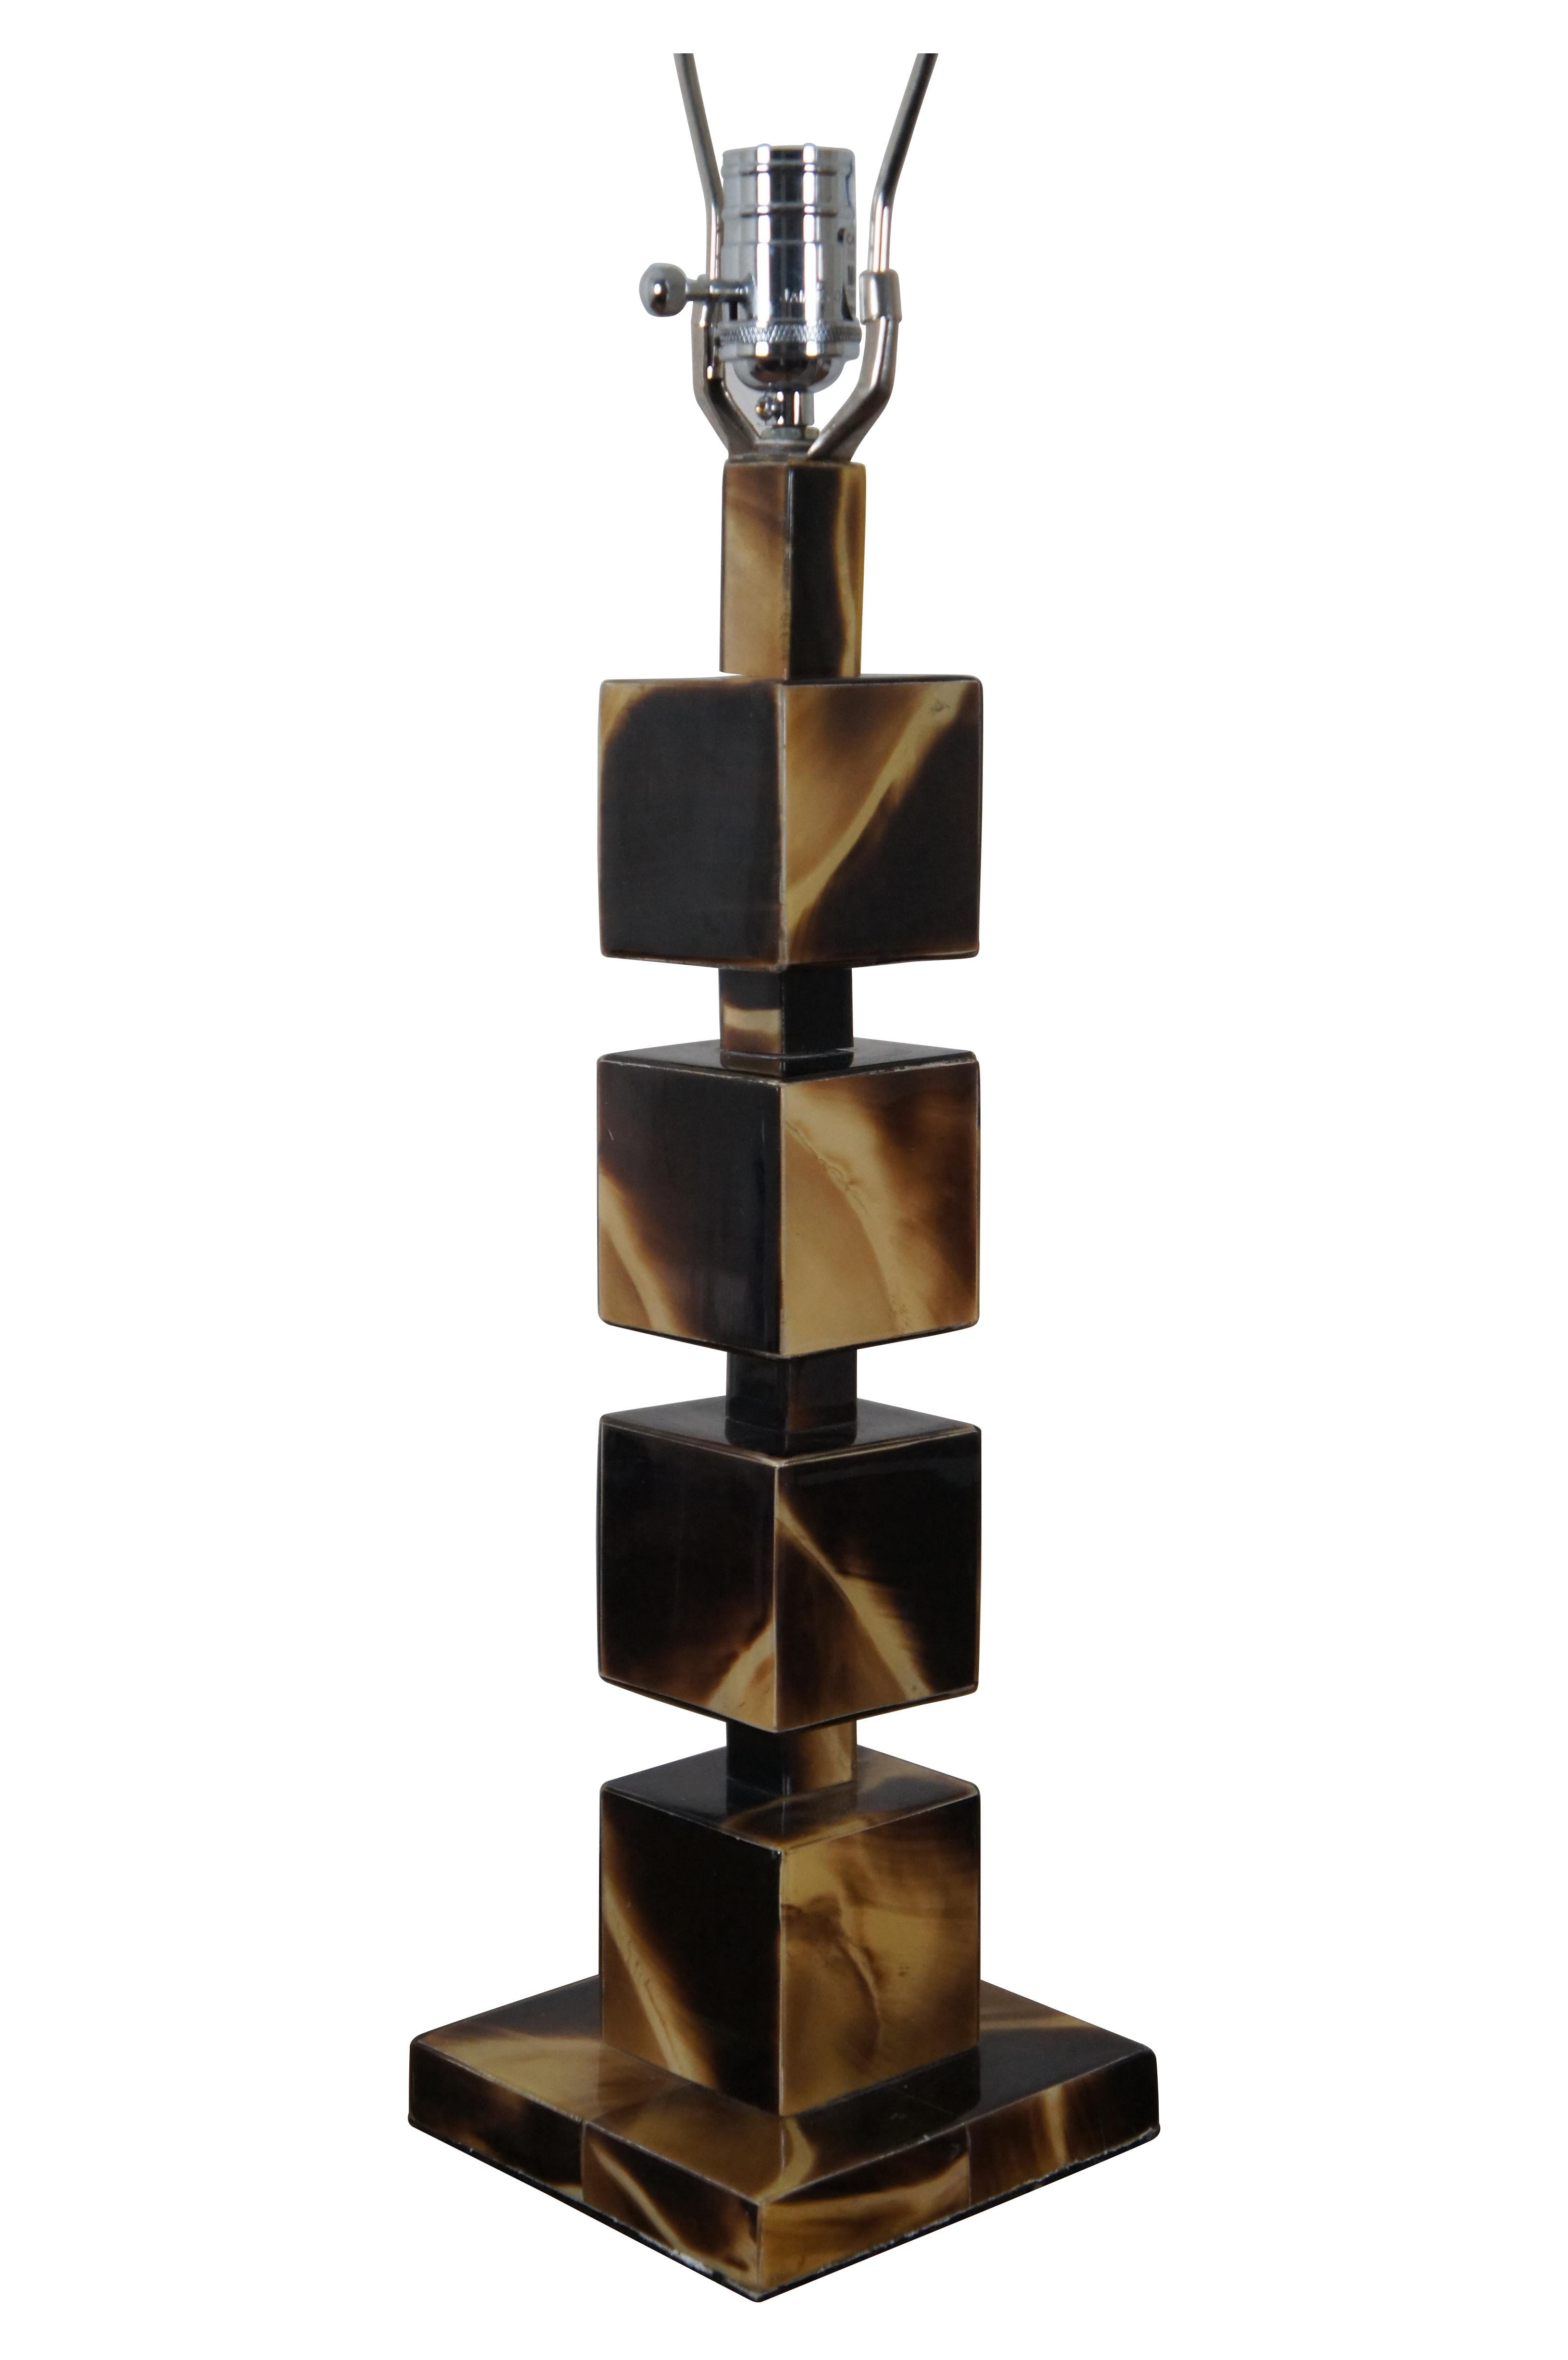 Lampe de table géométrique vintage Jamie Young en corne acrylique présentant une pile de cinq cubes / blocs sur une base carrée.  Comprend une harpe et un embout rectangulaire noir.

Dimensions :
6